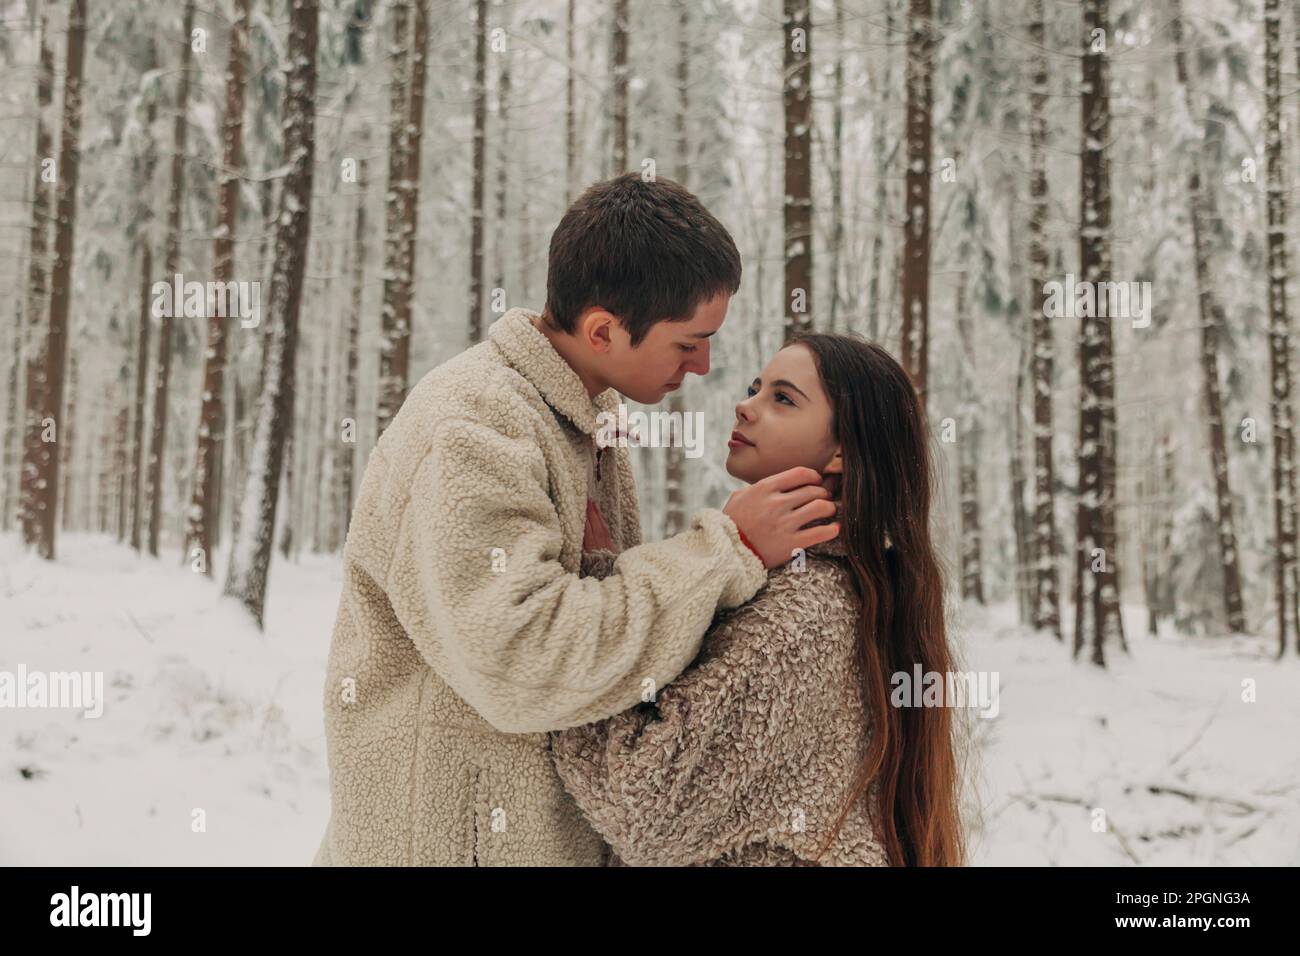 Ein romantisches Teenager-Paar, das im verschneiten Wald zusammensteht Stockfoto